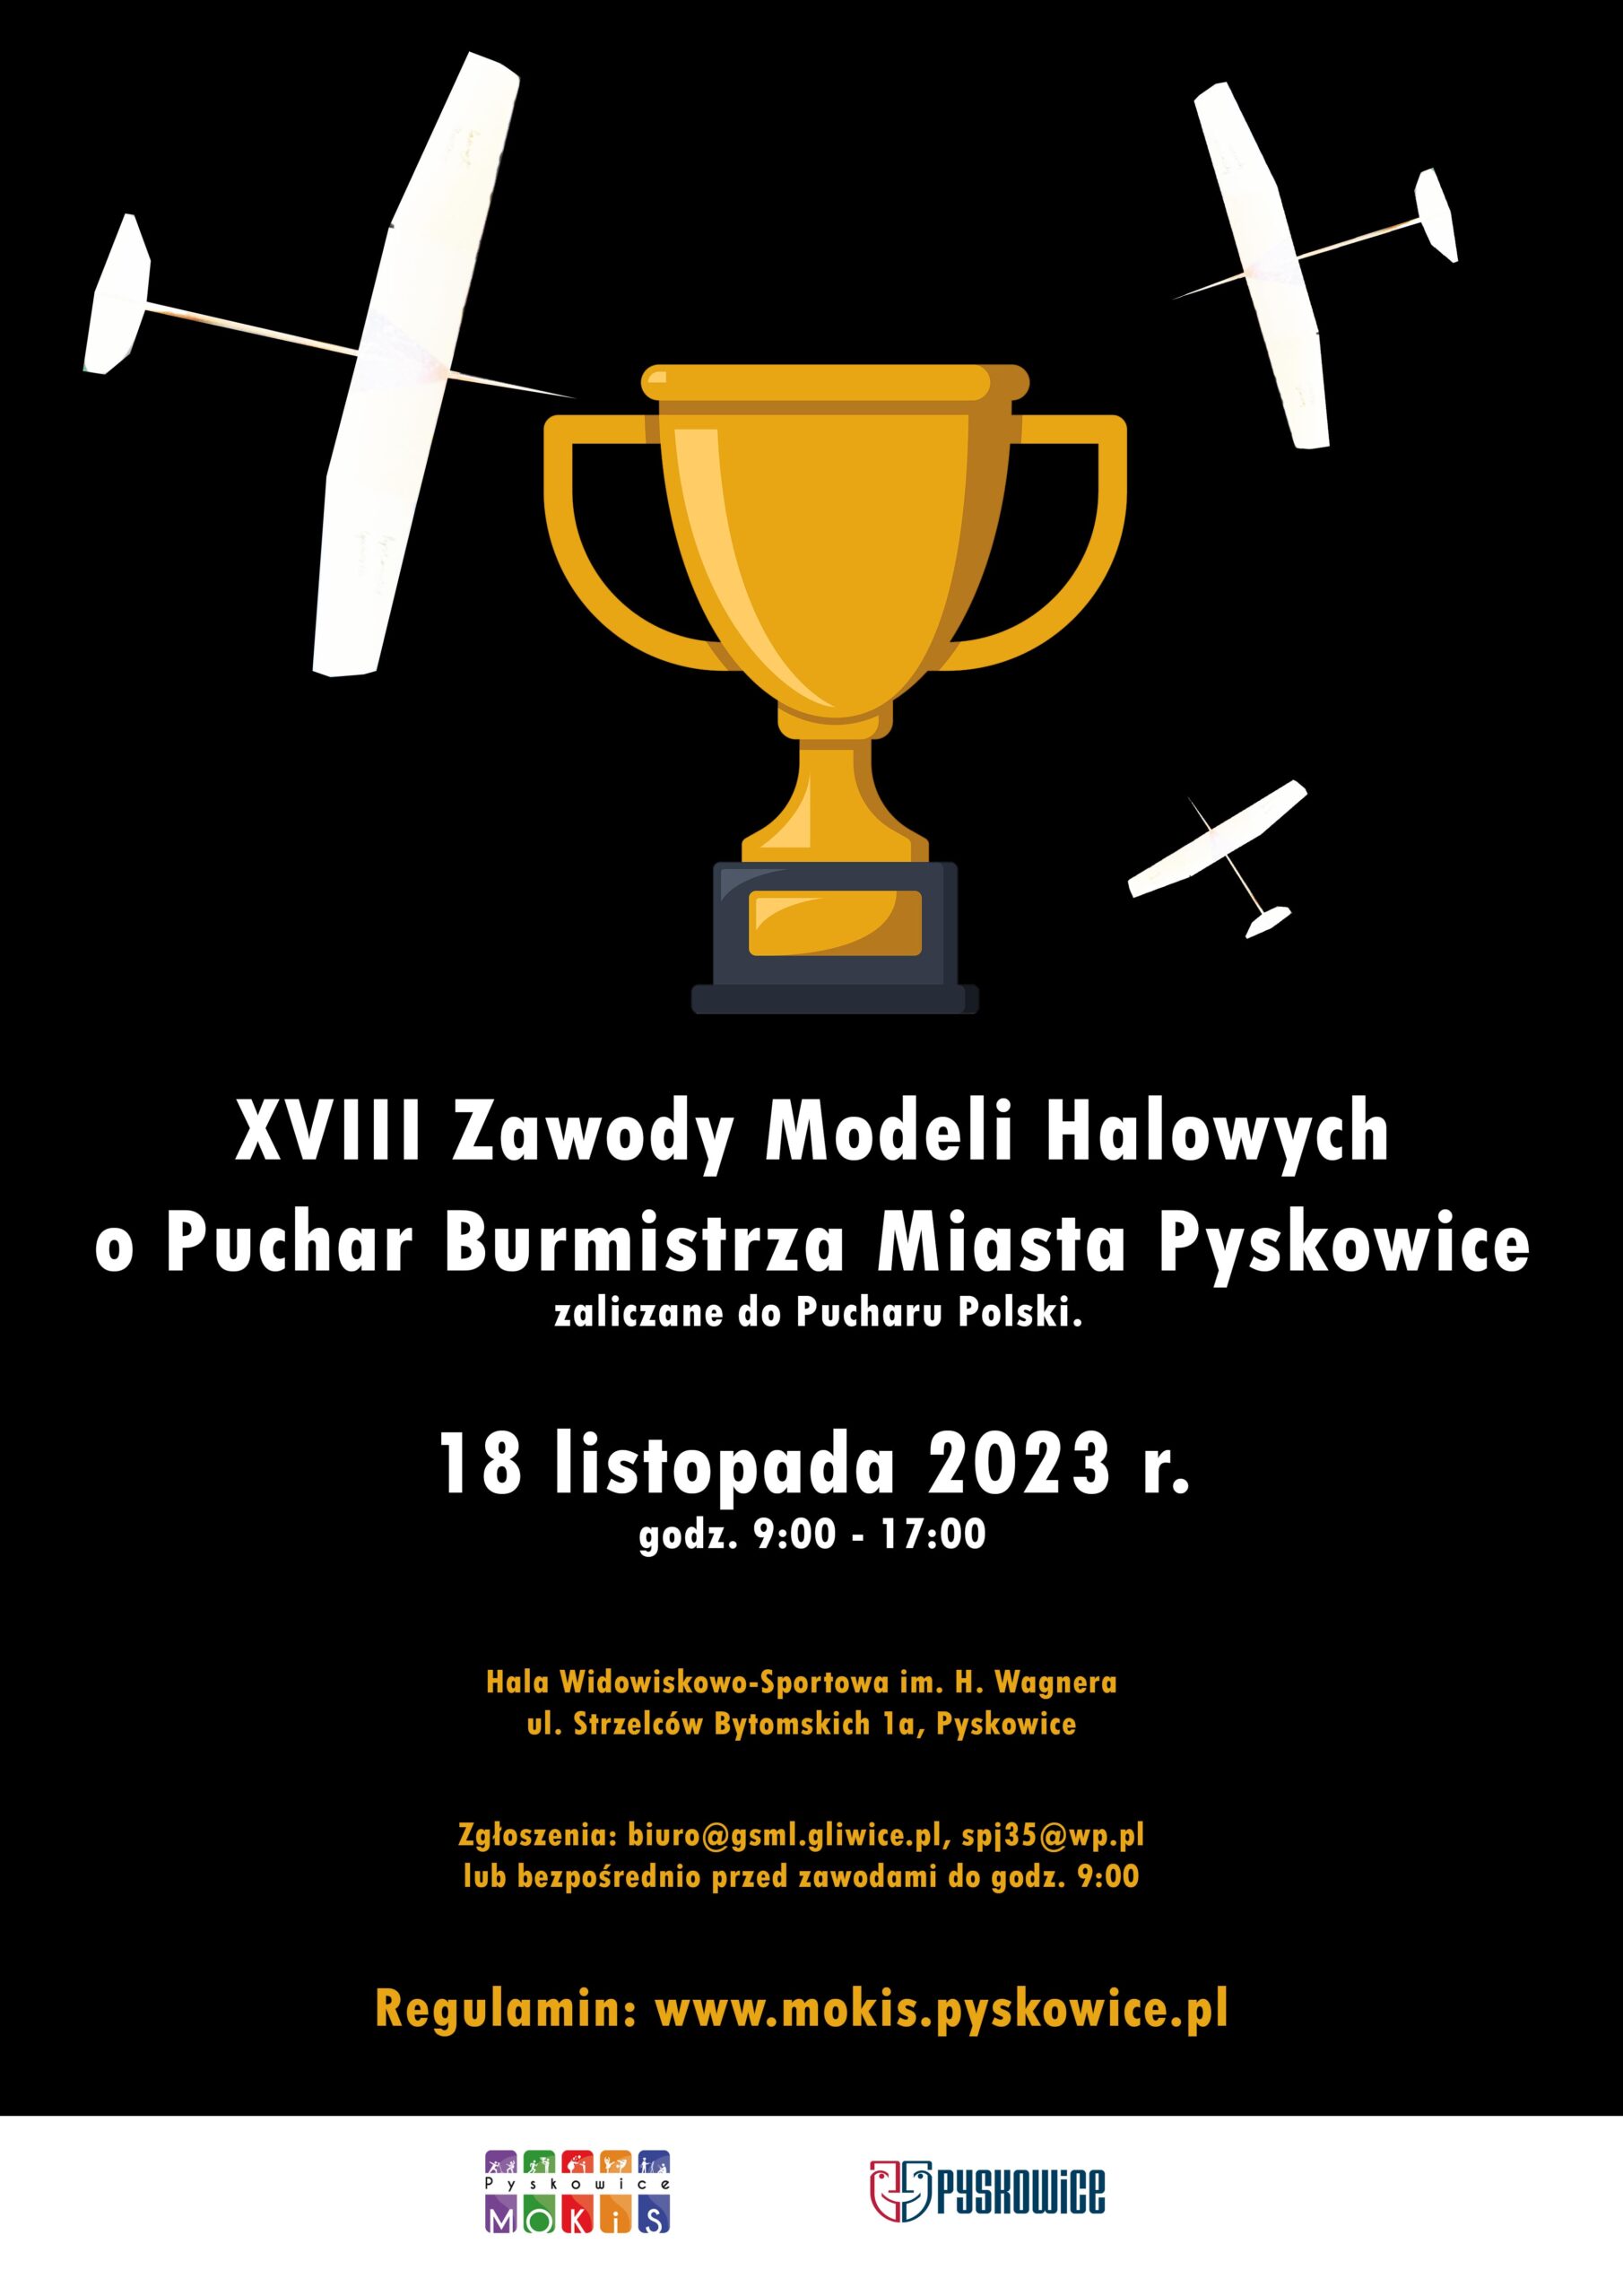 Plakat promujący XVIII Zawody Modeli Halowych o Puchar Burmistrza Miasta Pyskowice